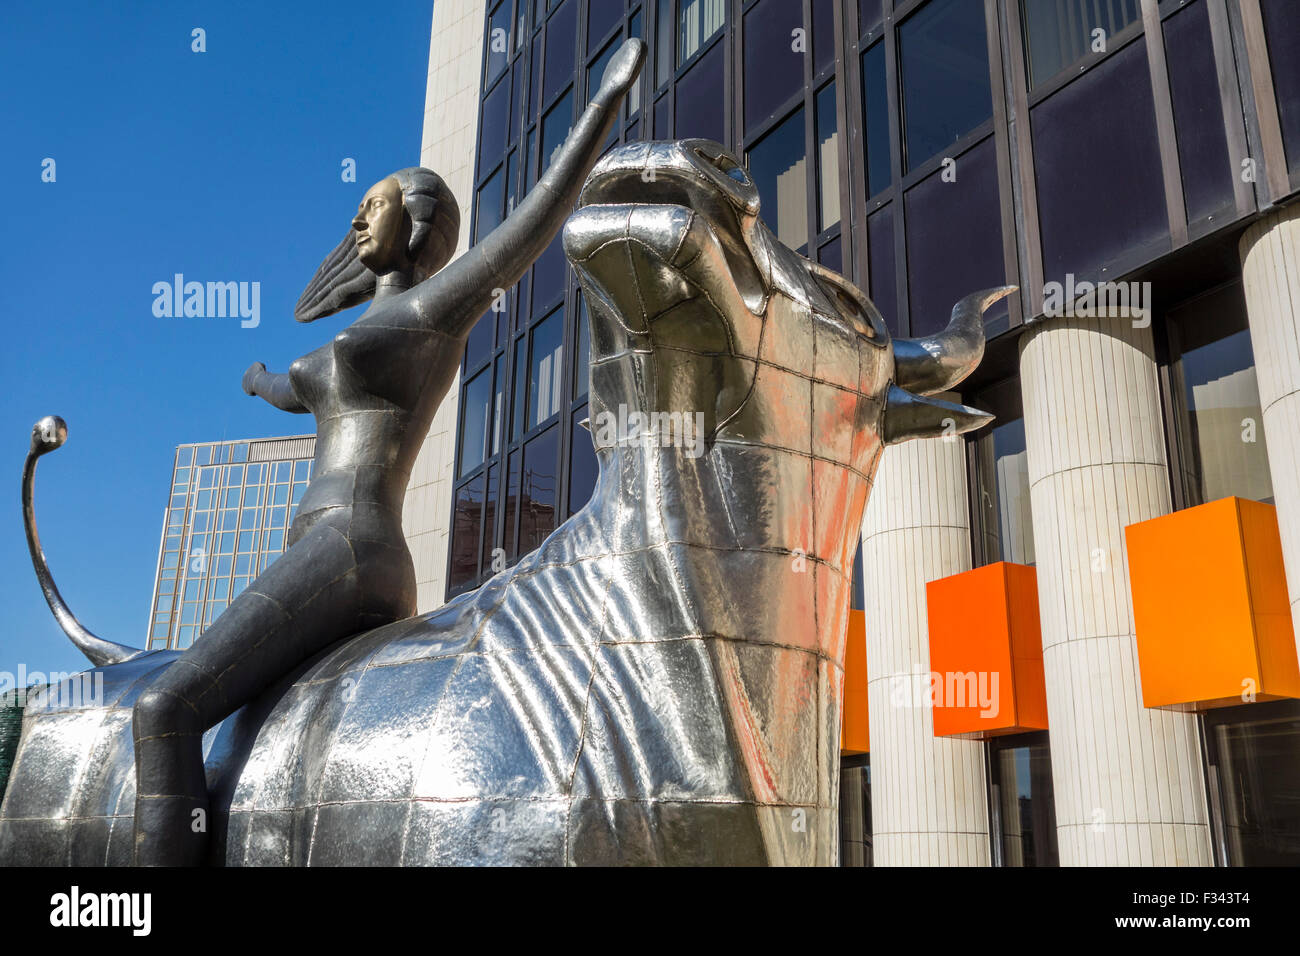 Sculpture l'enlèvement de Europa en face du siège du Conseil de l'Europe / Europe / Conseil de l'Europe, Strasbourg, France Banque D'Images